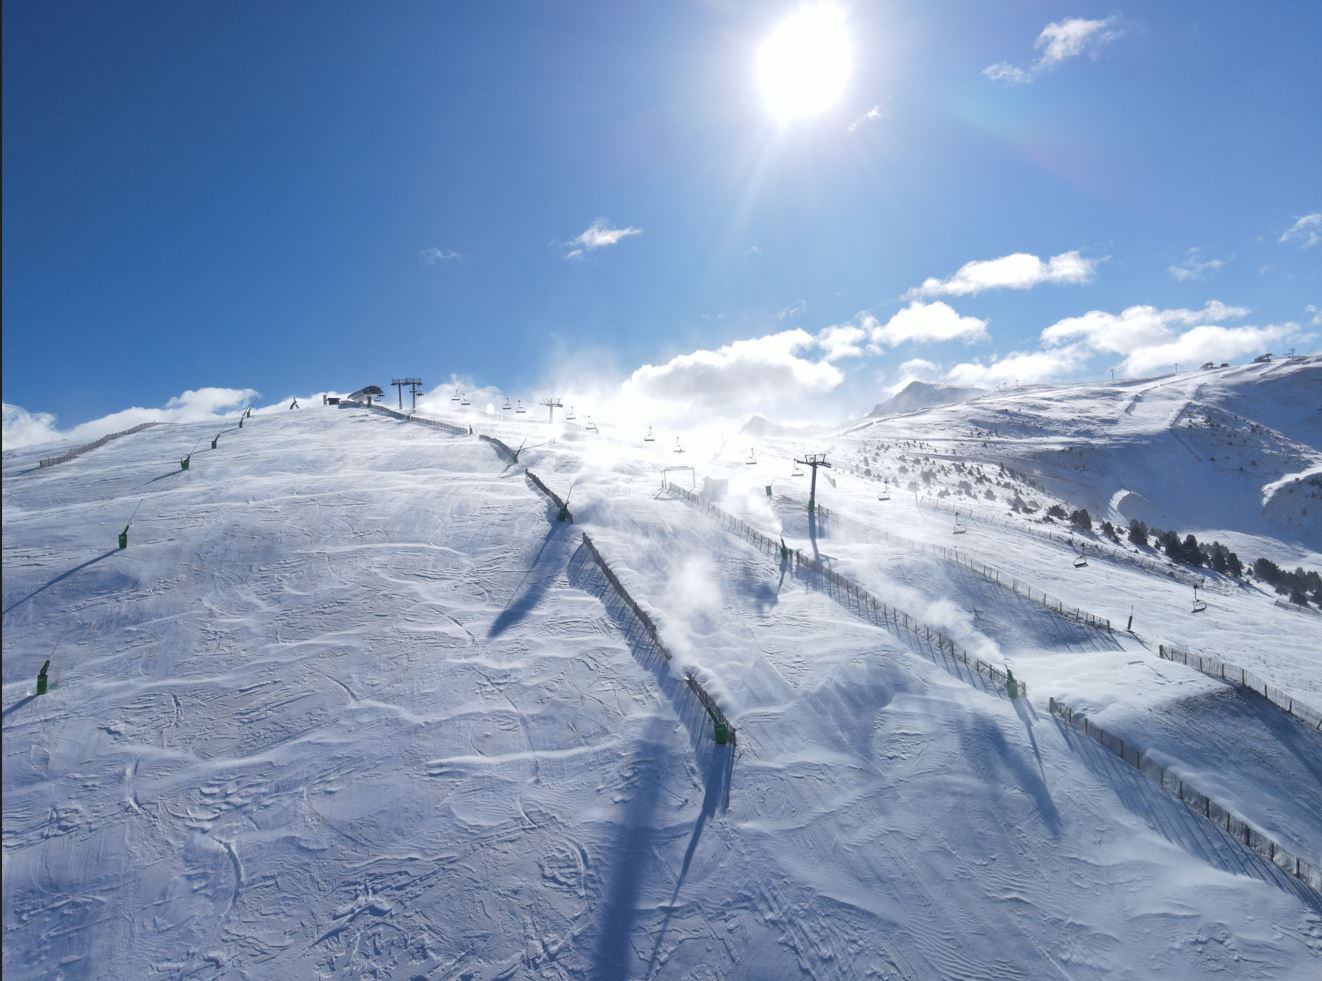 La neu permet connectar tots els sectors de Grandvalira